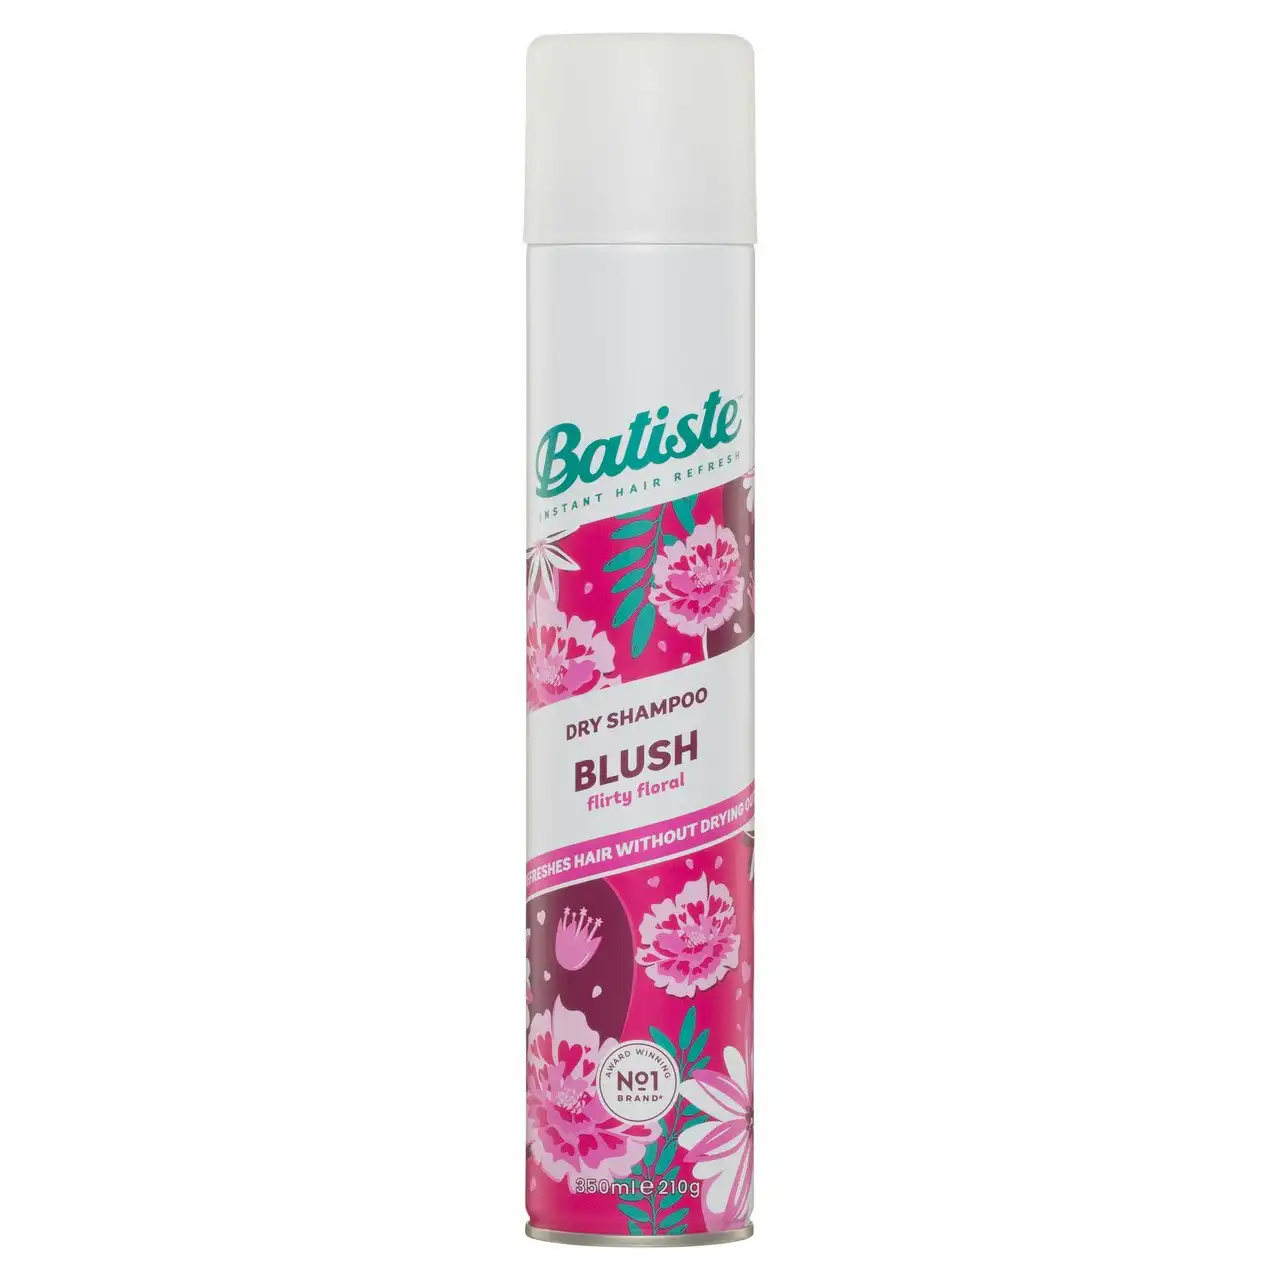 Batiste Blush Dry Shampoo 350mL